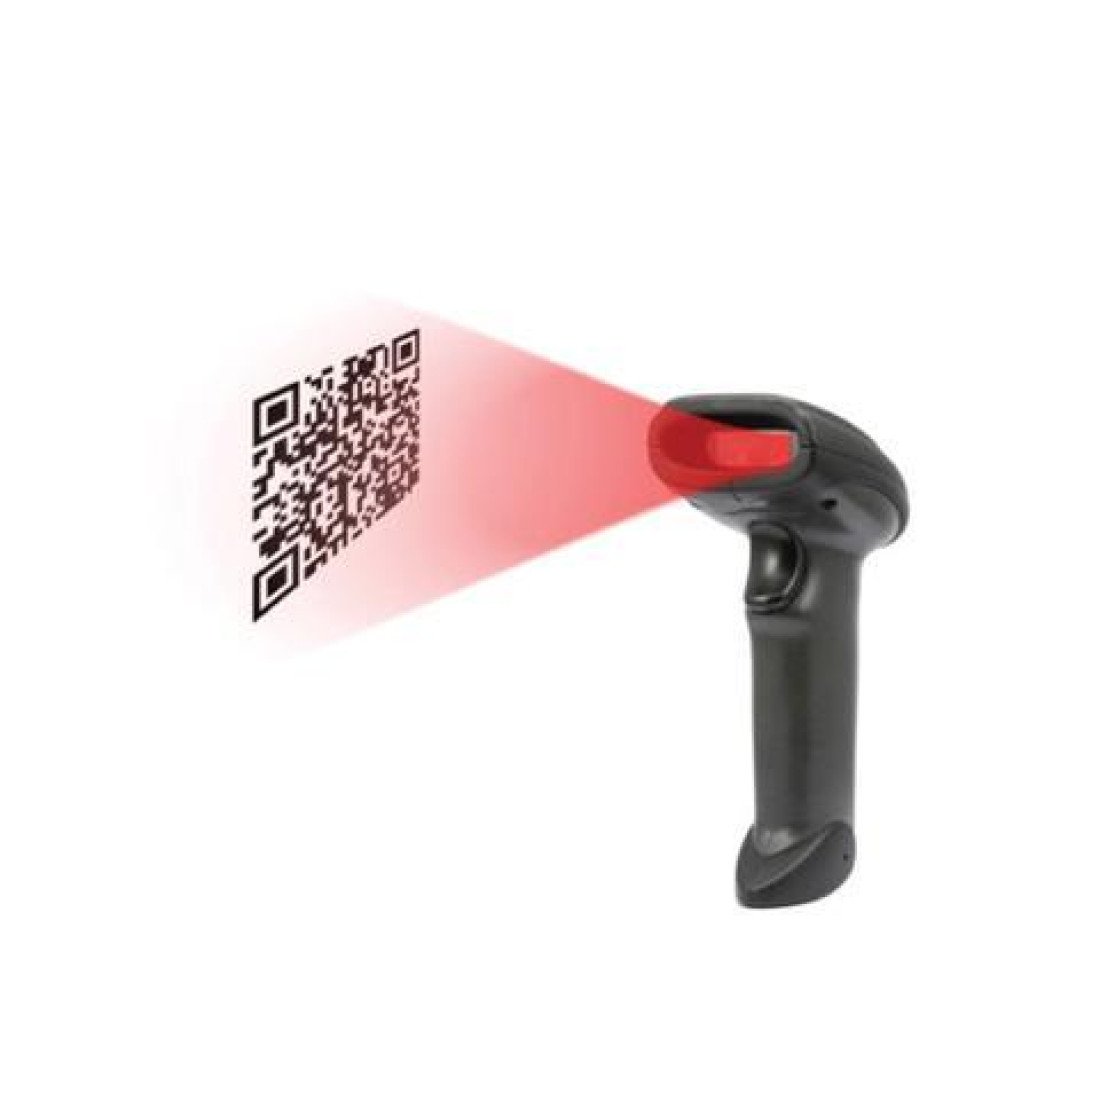 Камера чтения штрих кодов. Сканер штрихкода Sunlux XL-3600 USB (2d). Сканер штрих-кода проводной g-sense is1401 2d USB. 2d Barcode Scanner штрих. 2 Д сканер для считывания штрихкода.